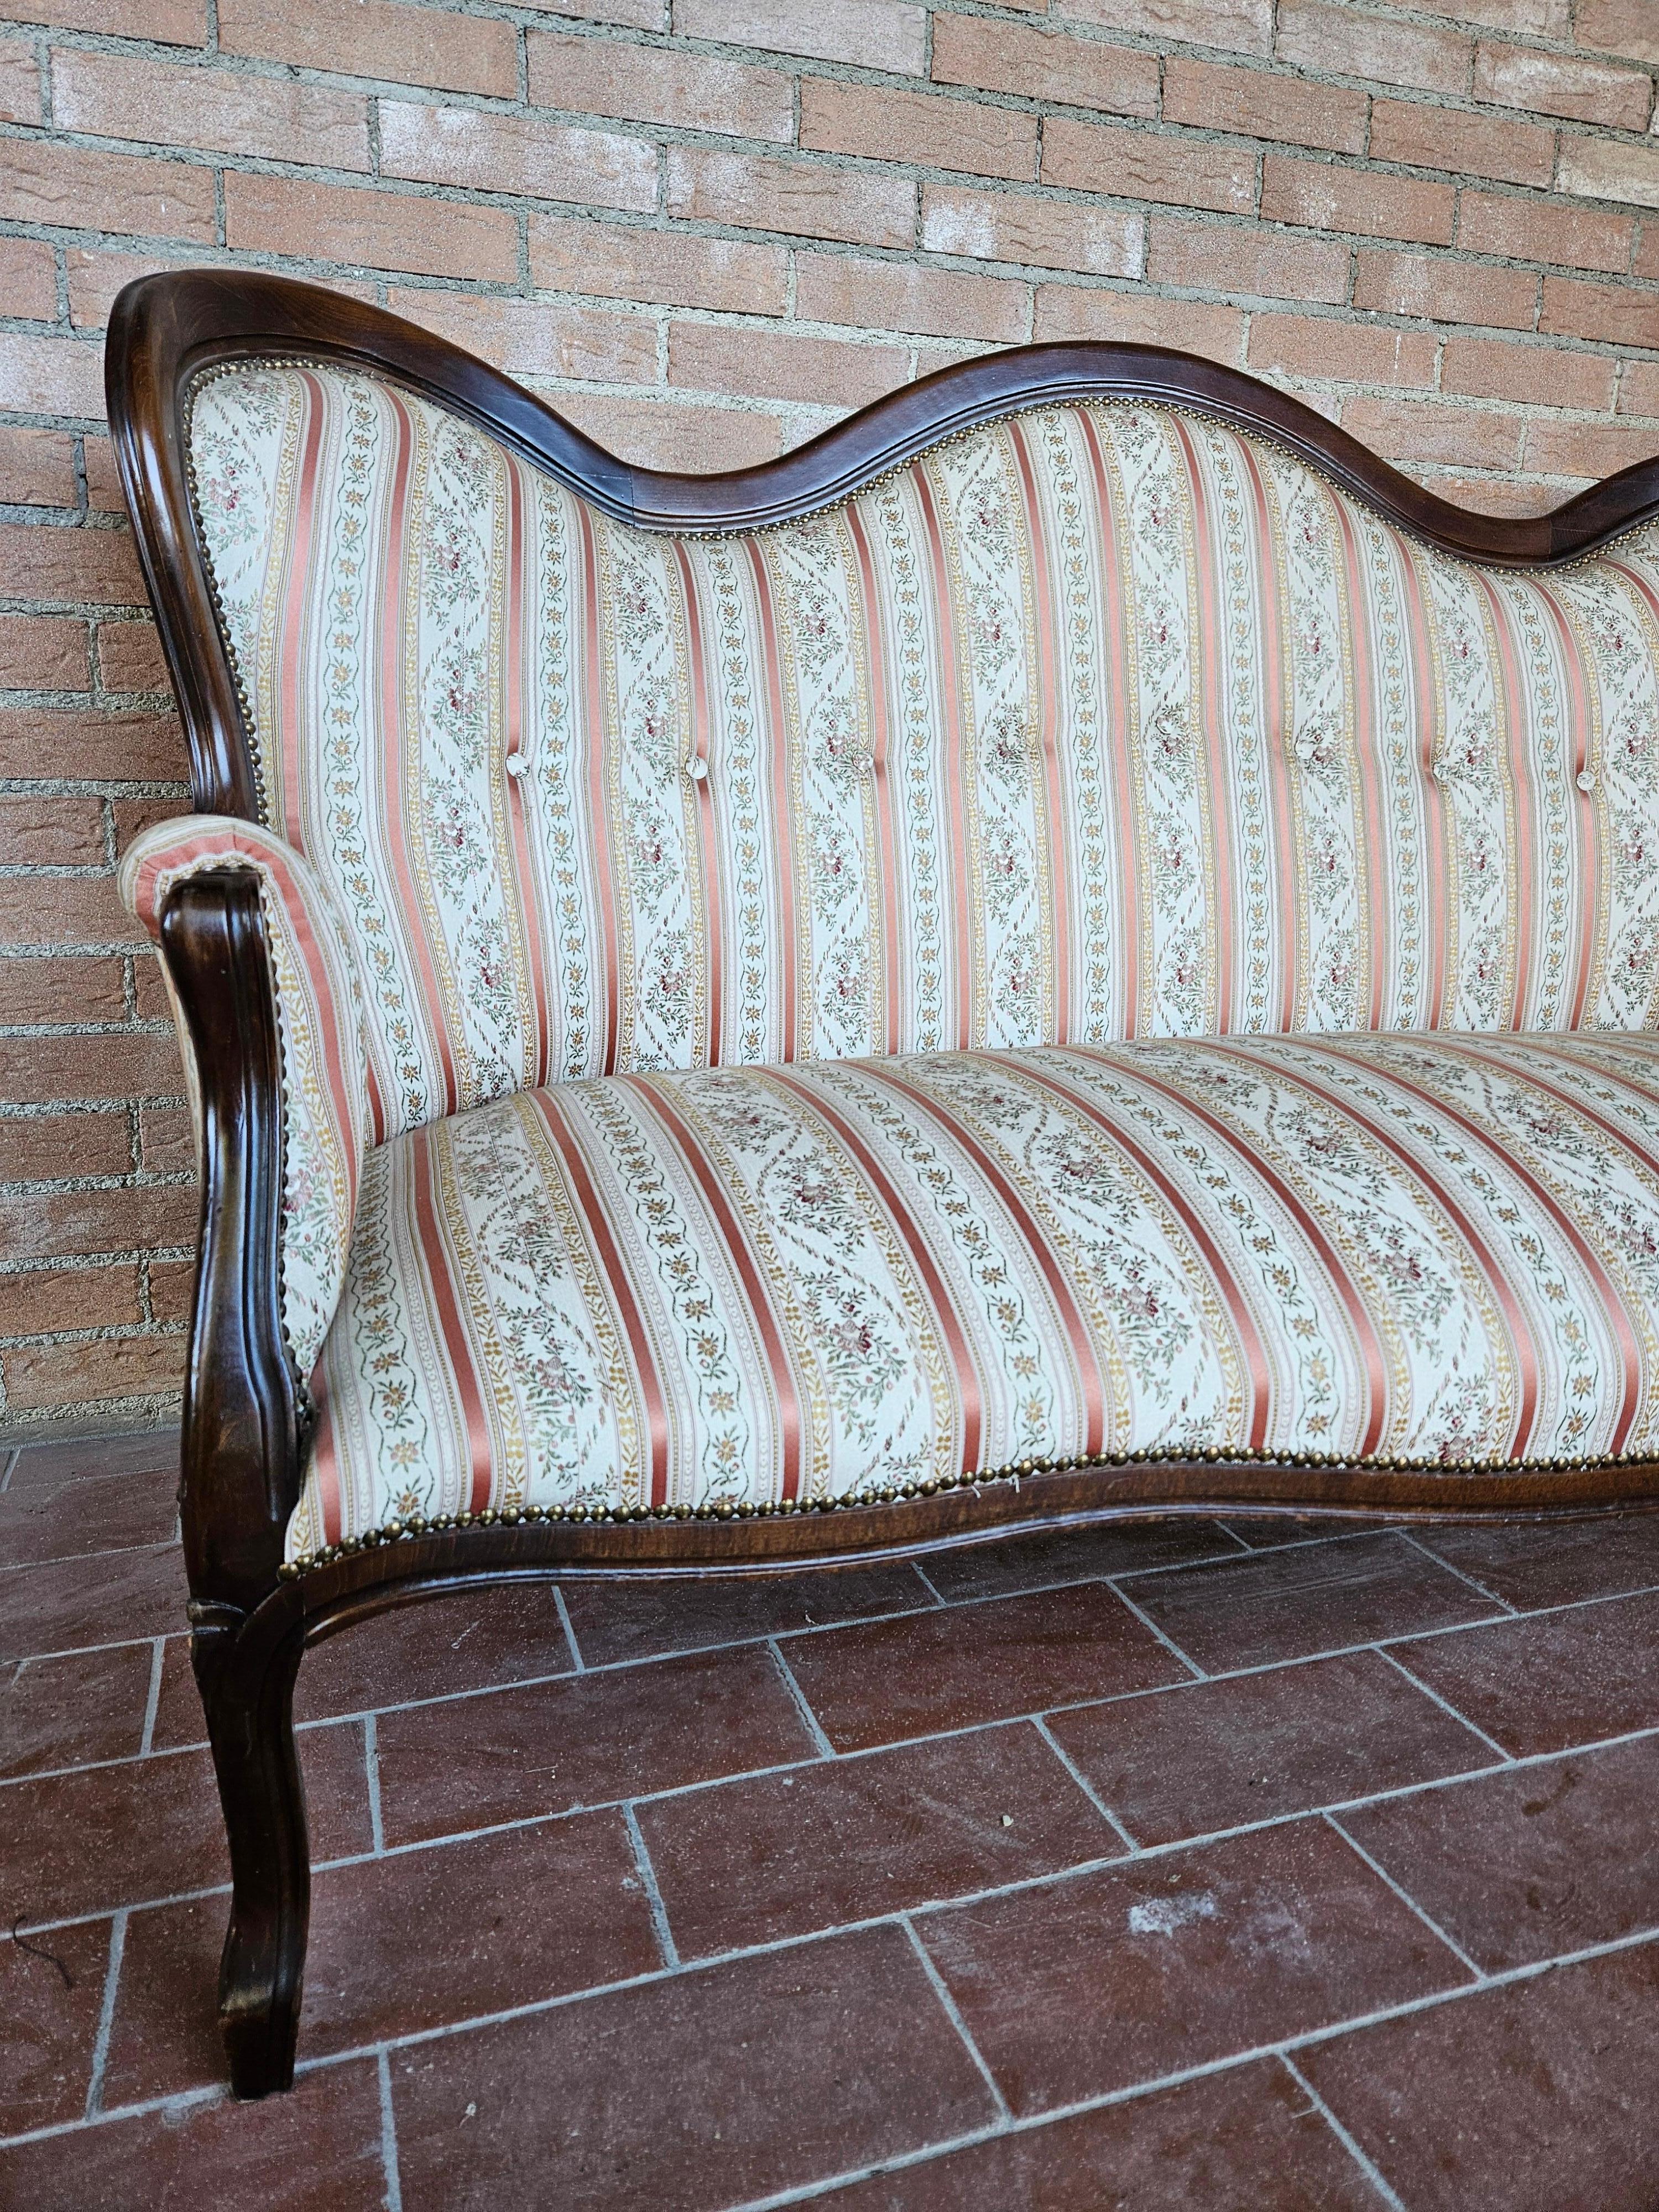 Sofa im Louis-Philippe-Stil, gepolstert mit Stoff und Holzrahmen.

Sitz H 40 cm.

Normale alters- und gebrauchsbedingte Abnutzungserscheinungen wie auf dem Foto zu sehen.
